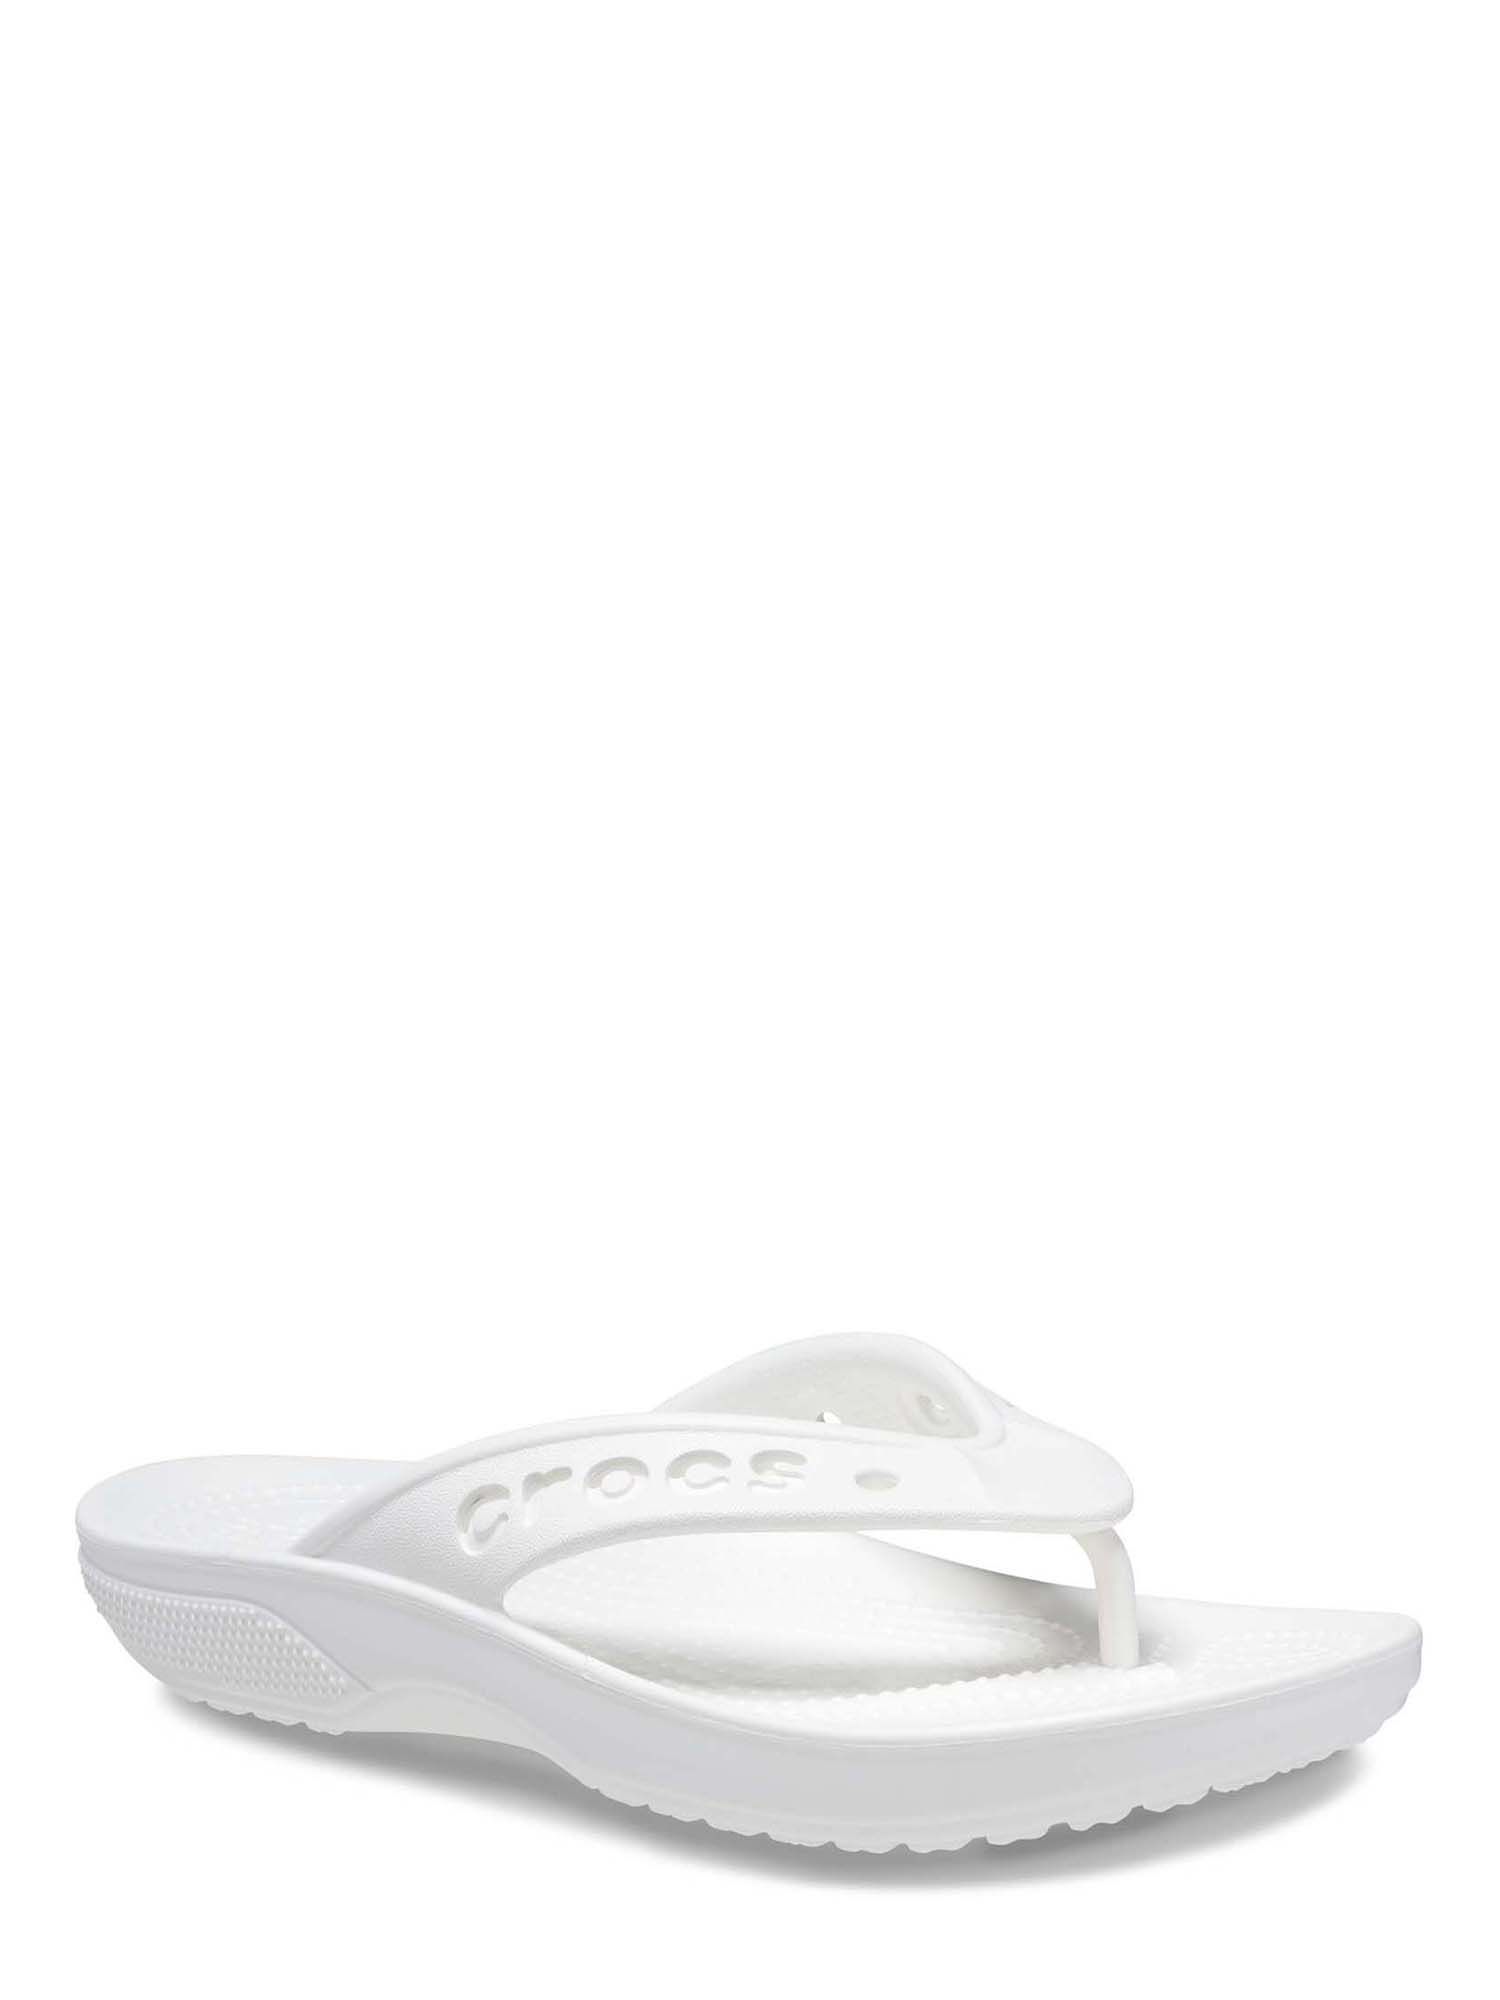 Crocs Men's and Women's Unisex Baya II Flip Sandals | Walmart (US)